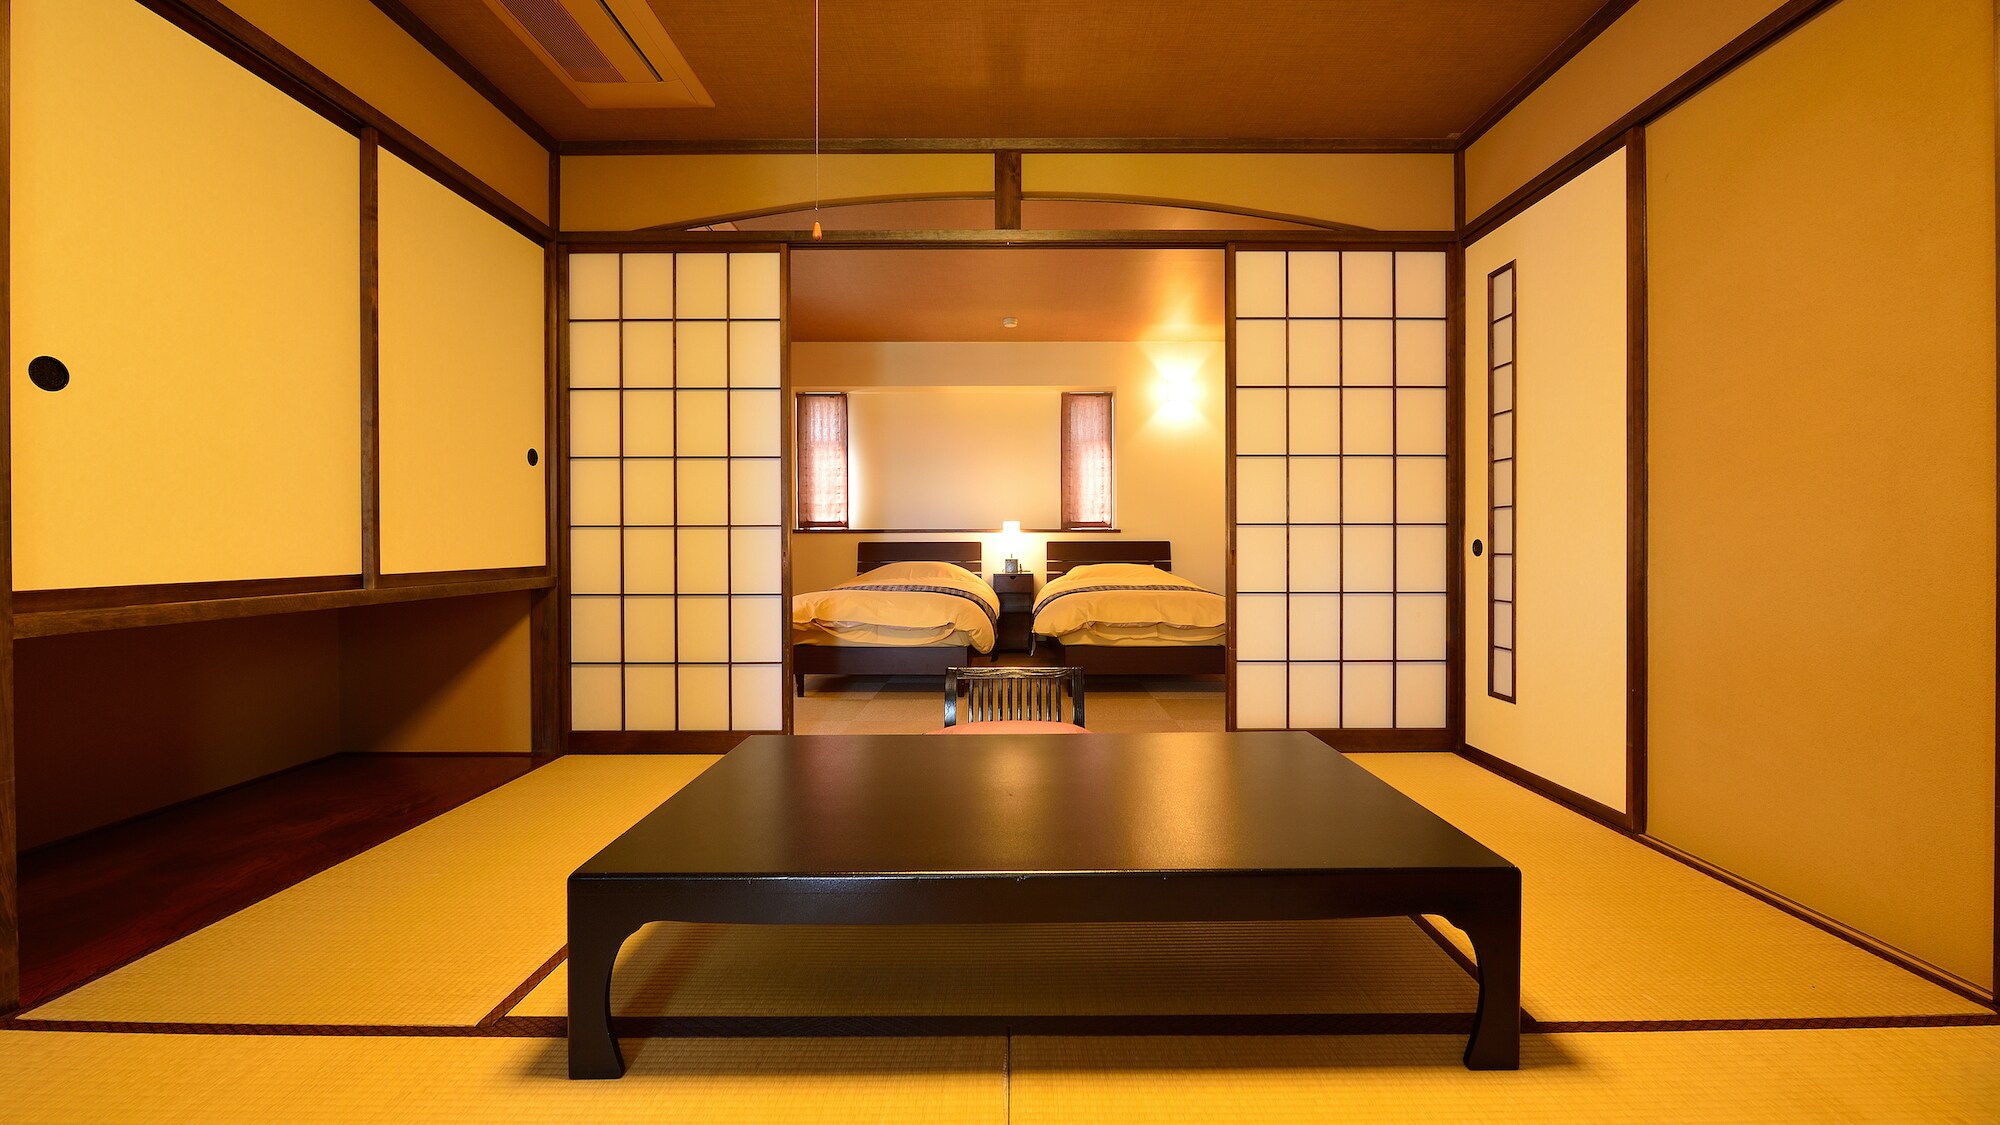 ห้องแบบญี่ปุ่นและแบบตะวันตก (8 เสื่อทาทามิ + ห้องเตียงแฝด)